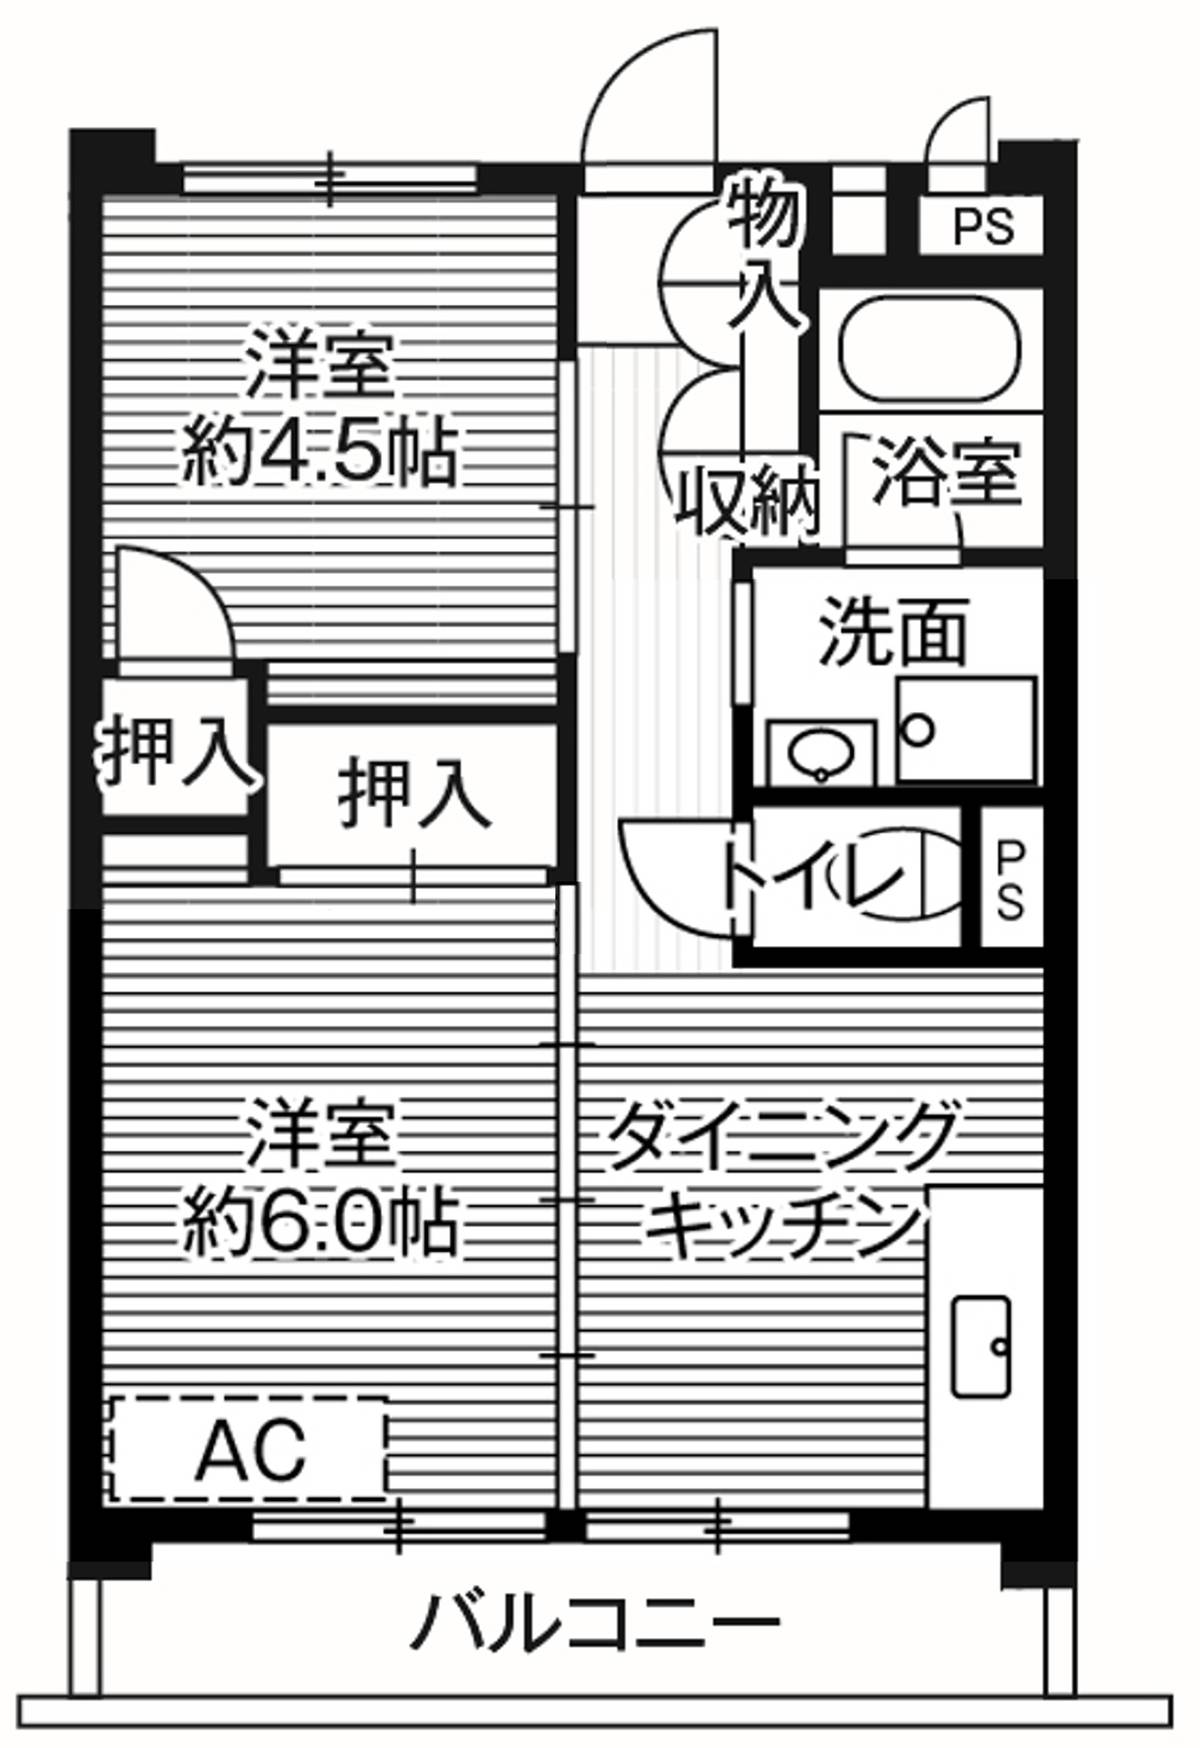 位于川口市的Village House 柳崎 Tower的平面图2DK